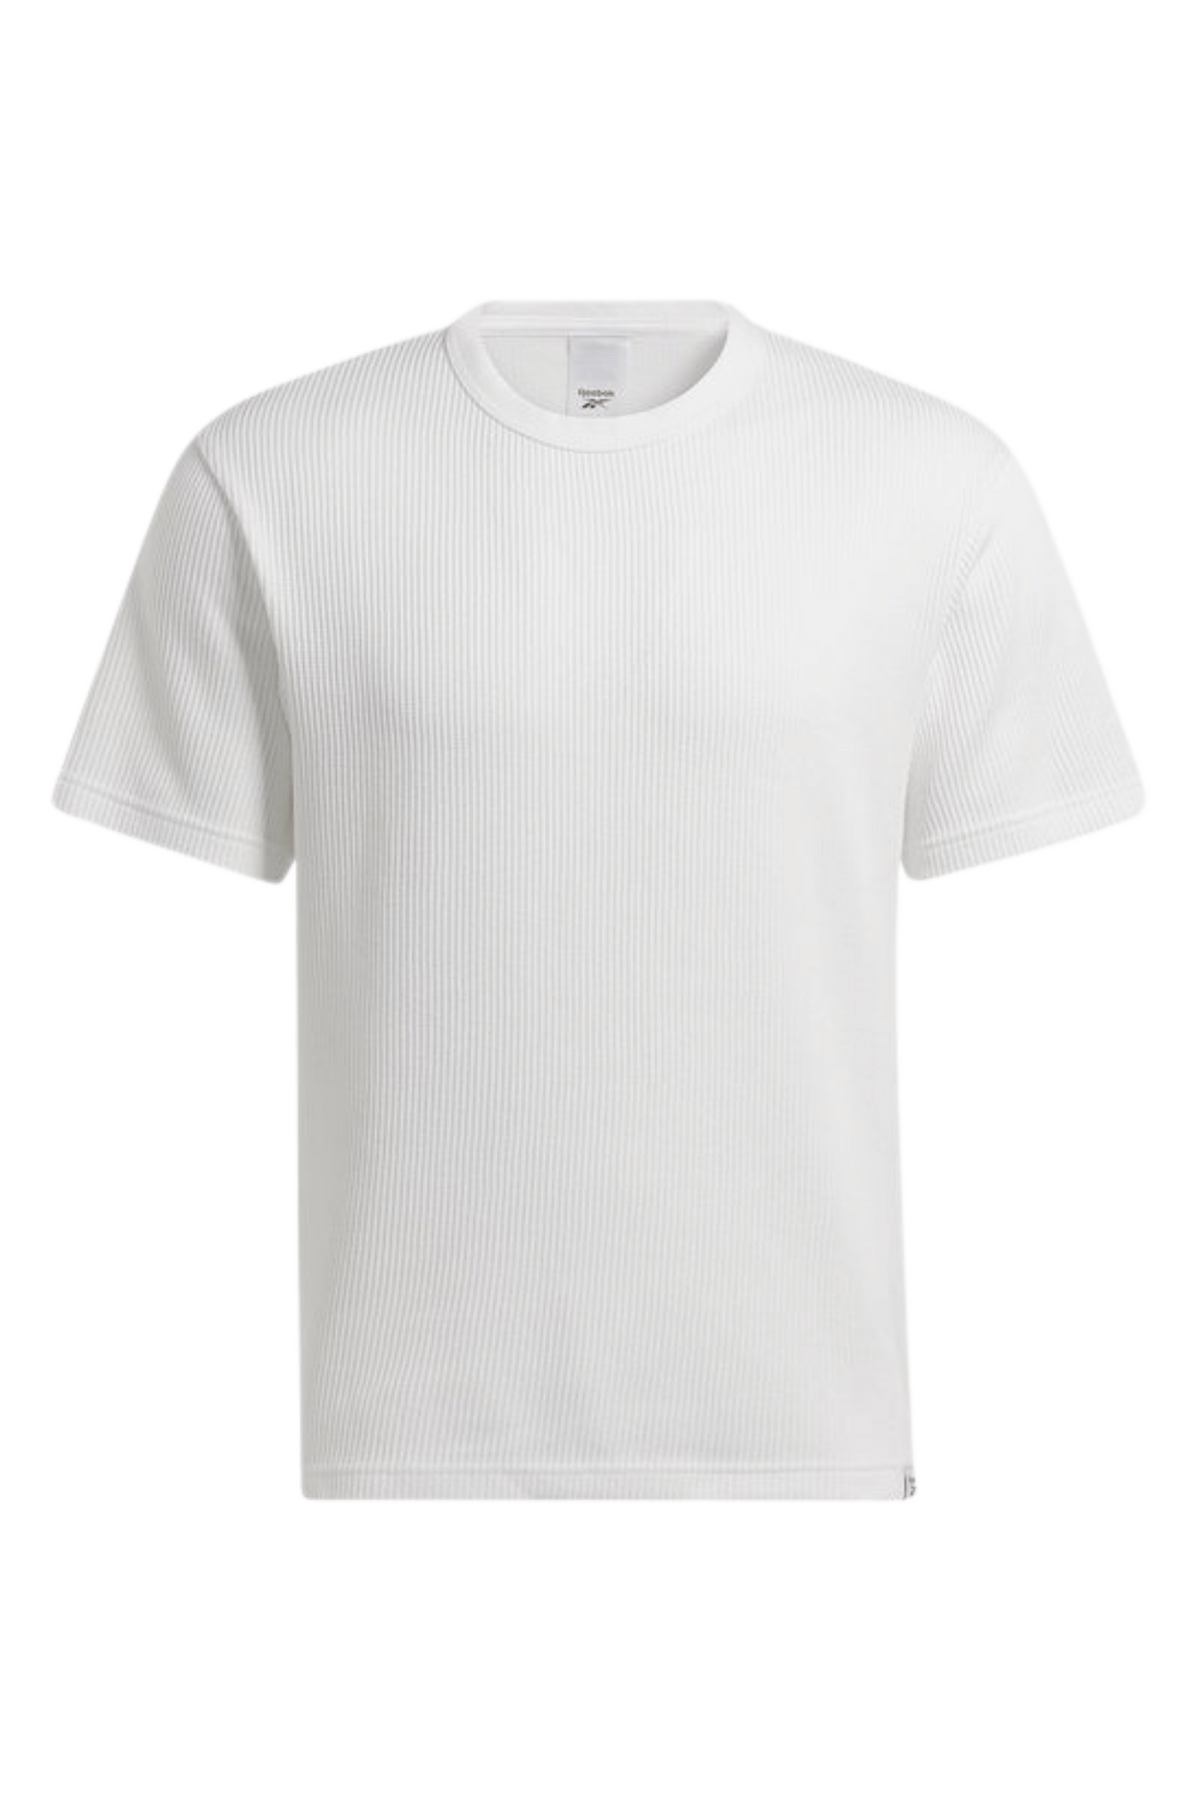 חולצת טישירט ריבוק CL WDE REEBOK אוברסייז לגברים בצבע לבן-Reebok-S-נאקו